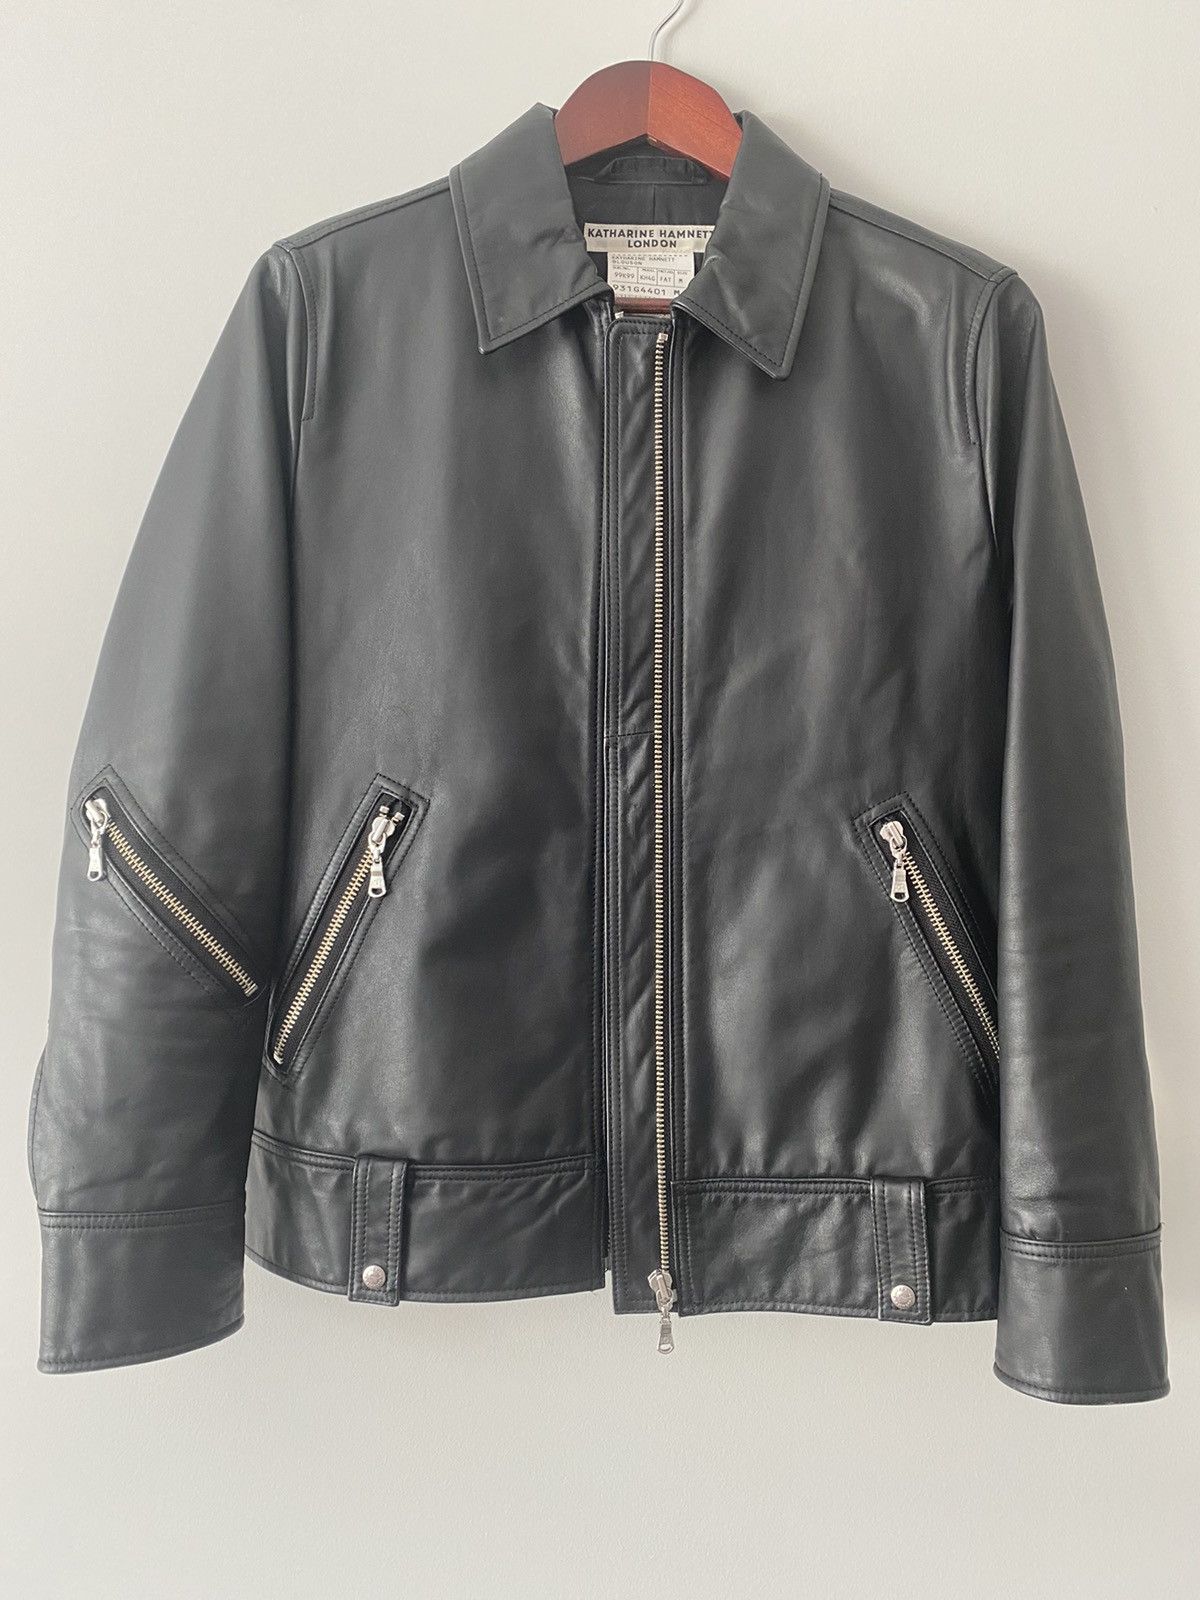 Men's Katharine Hamnett London Leather Jackets | Grailed